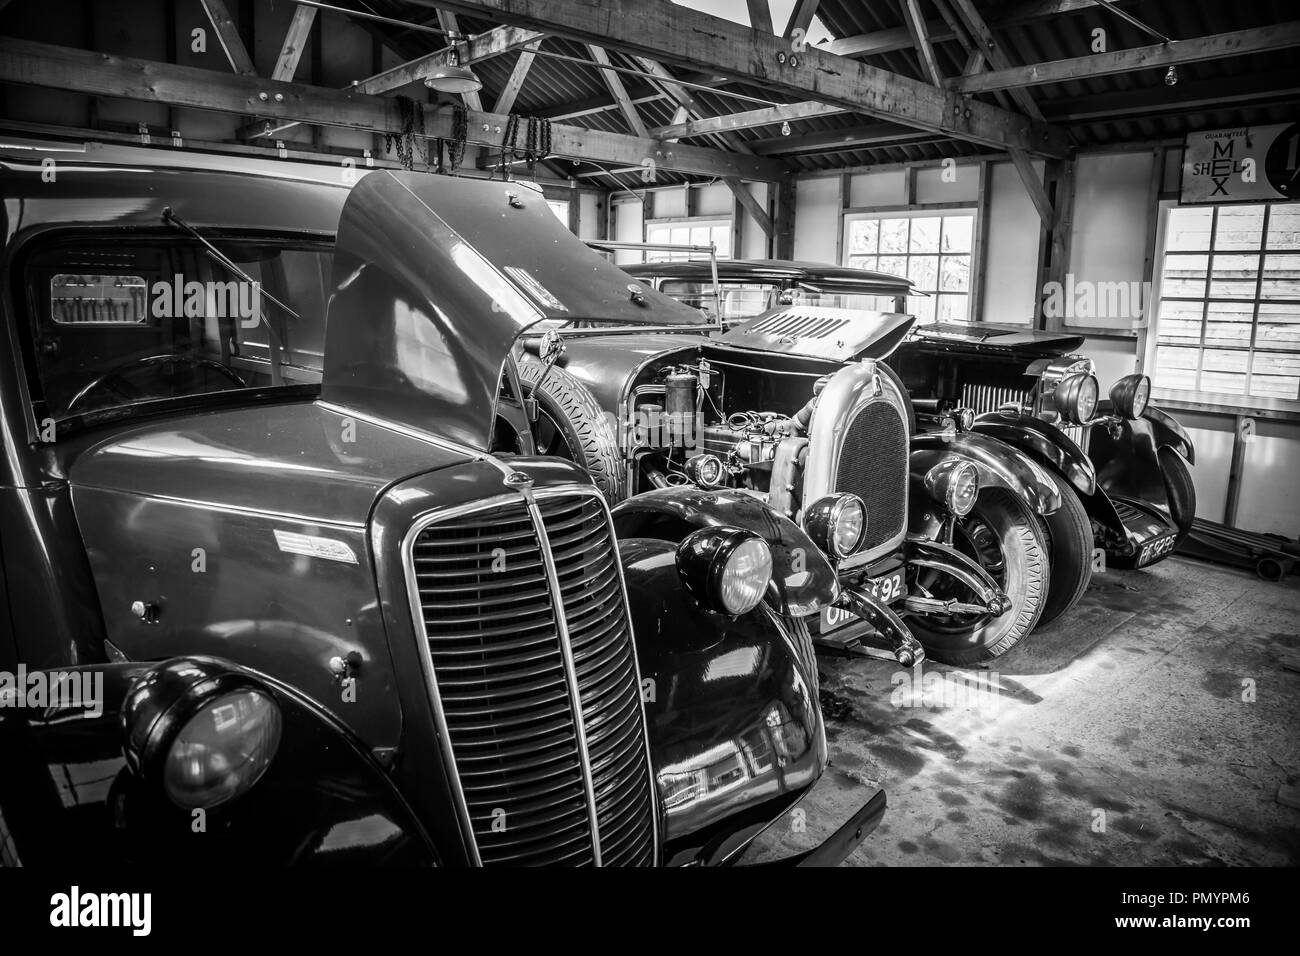 Dettagliato, arty, bianco e nero, paesaggio close up di lucido, lucidati vintage classic cars parcheggiato, affiancate in un garage aperto lo spazio. Foto Stock